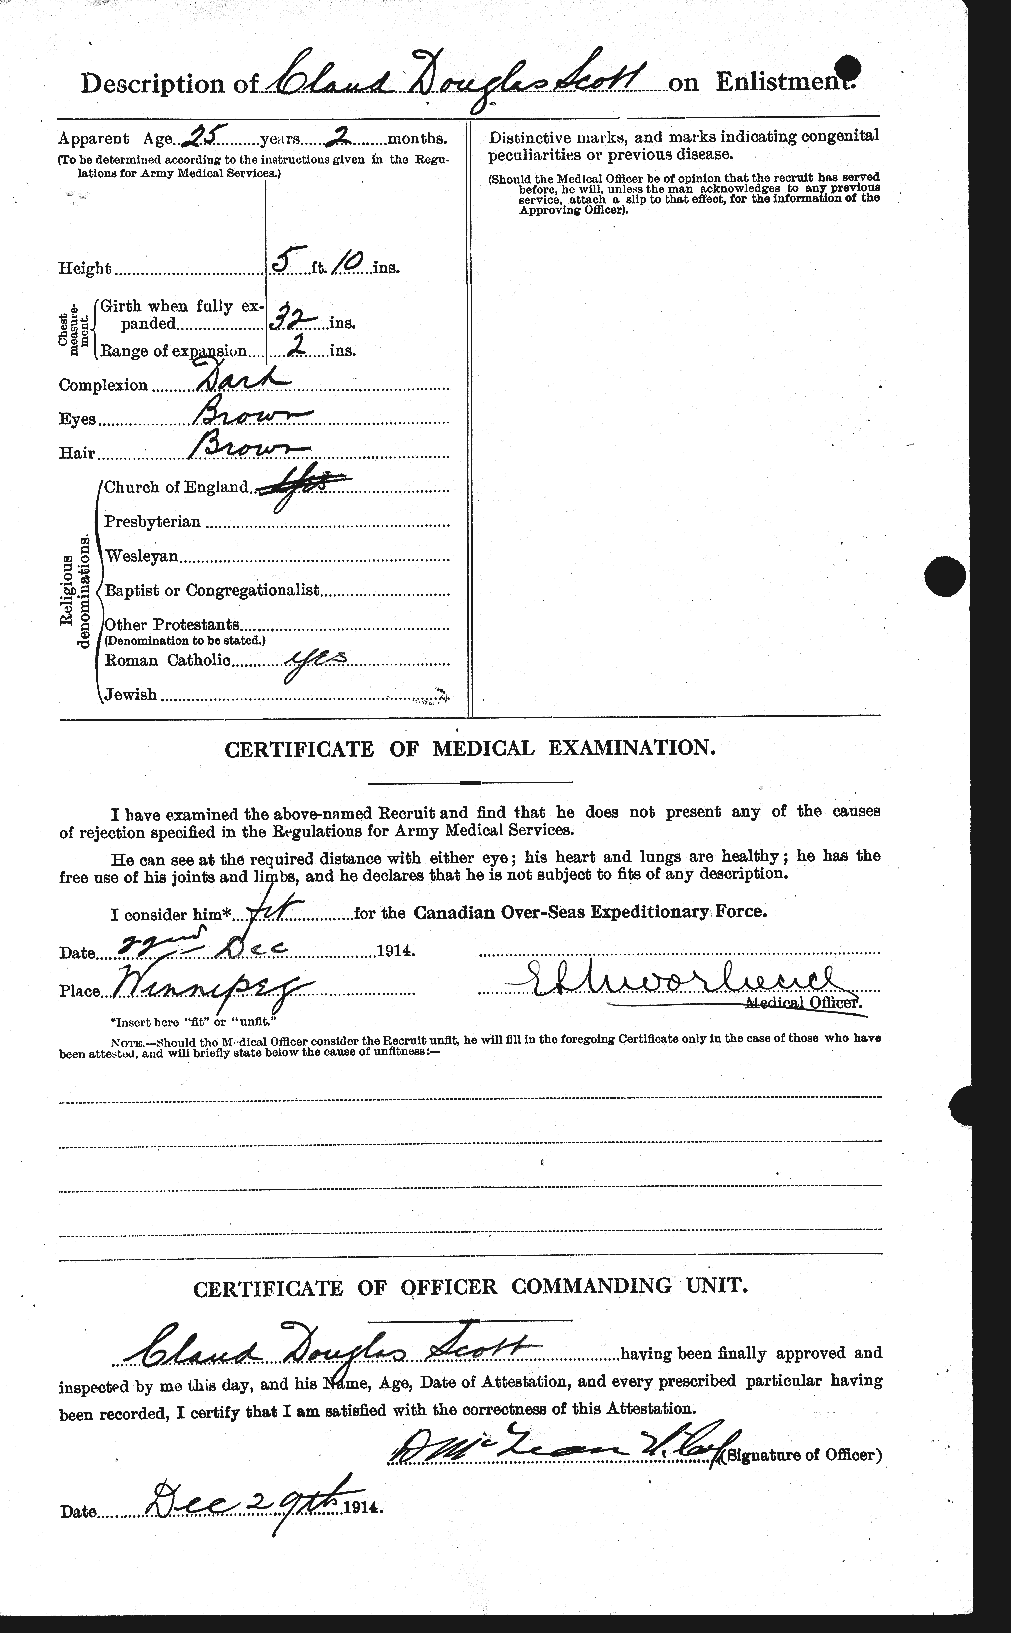 Dossiers du Personnel de la Première Guerre mondiale - CEC 085633b